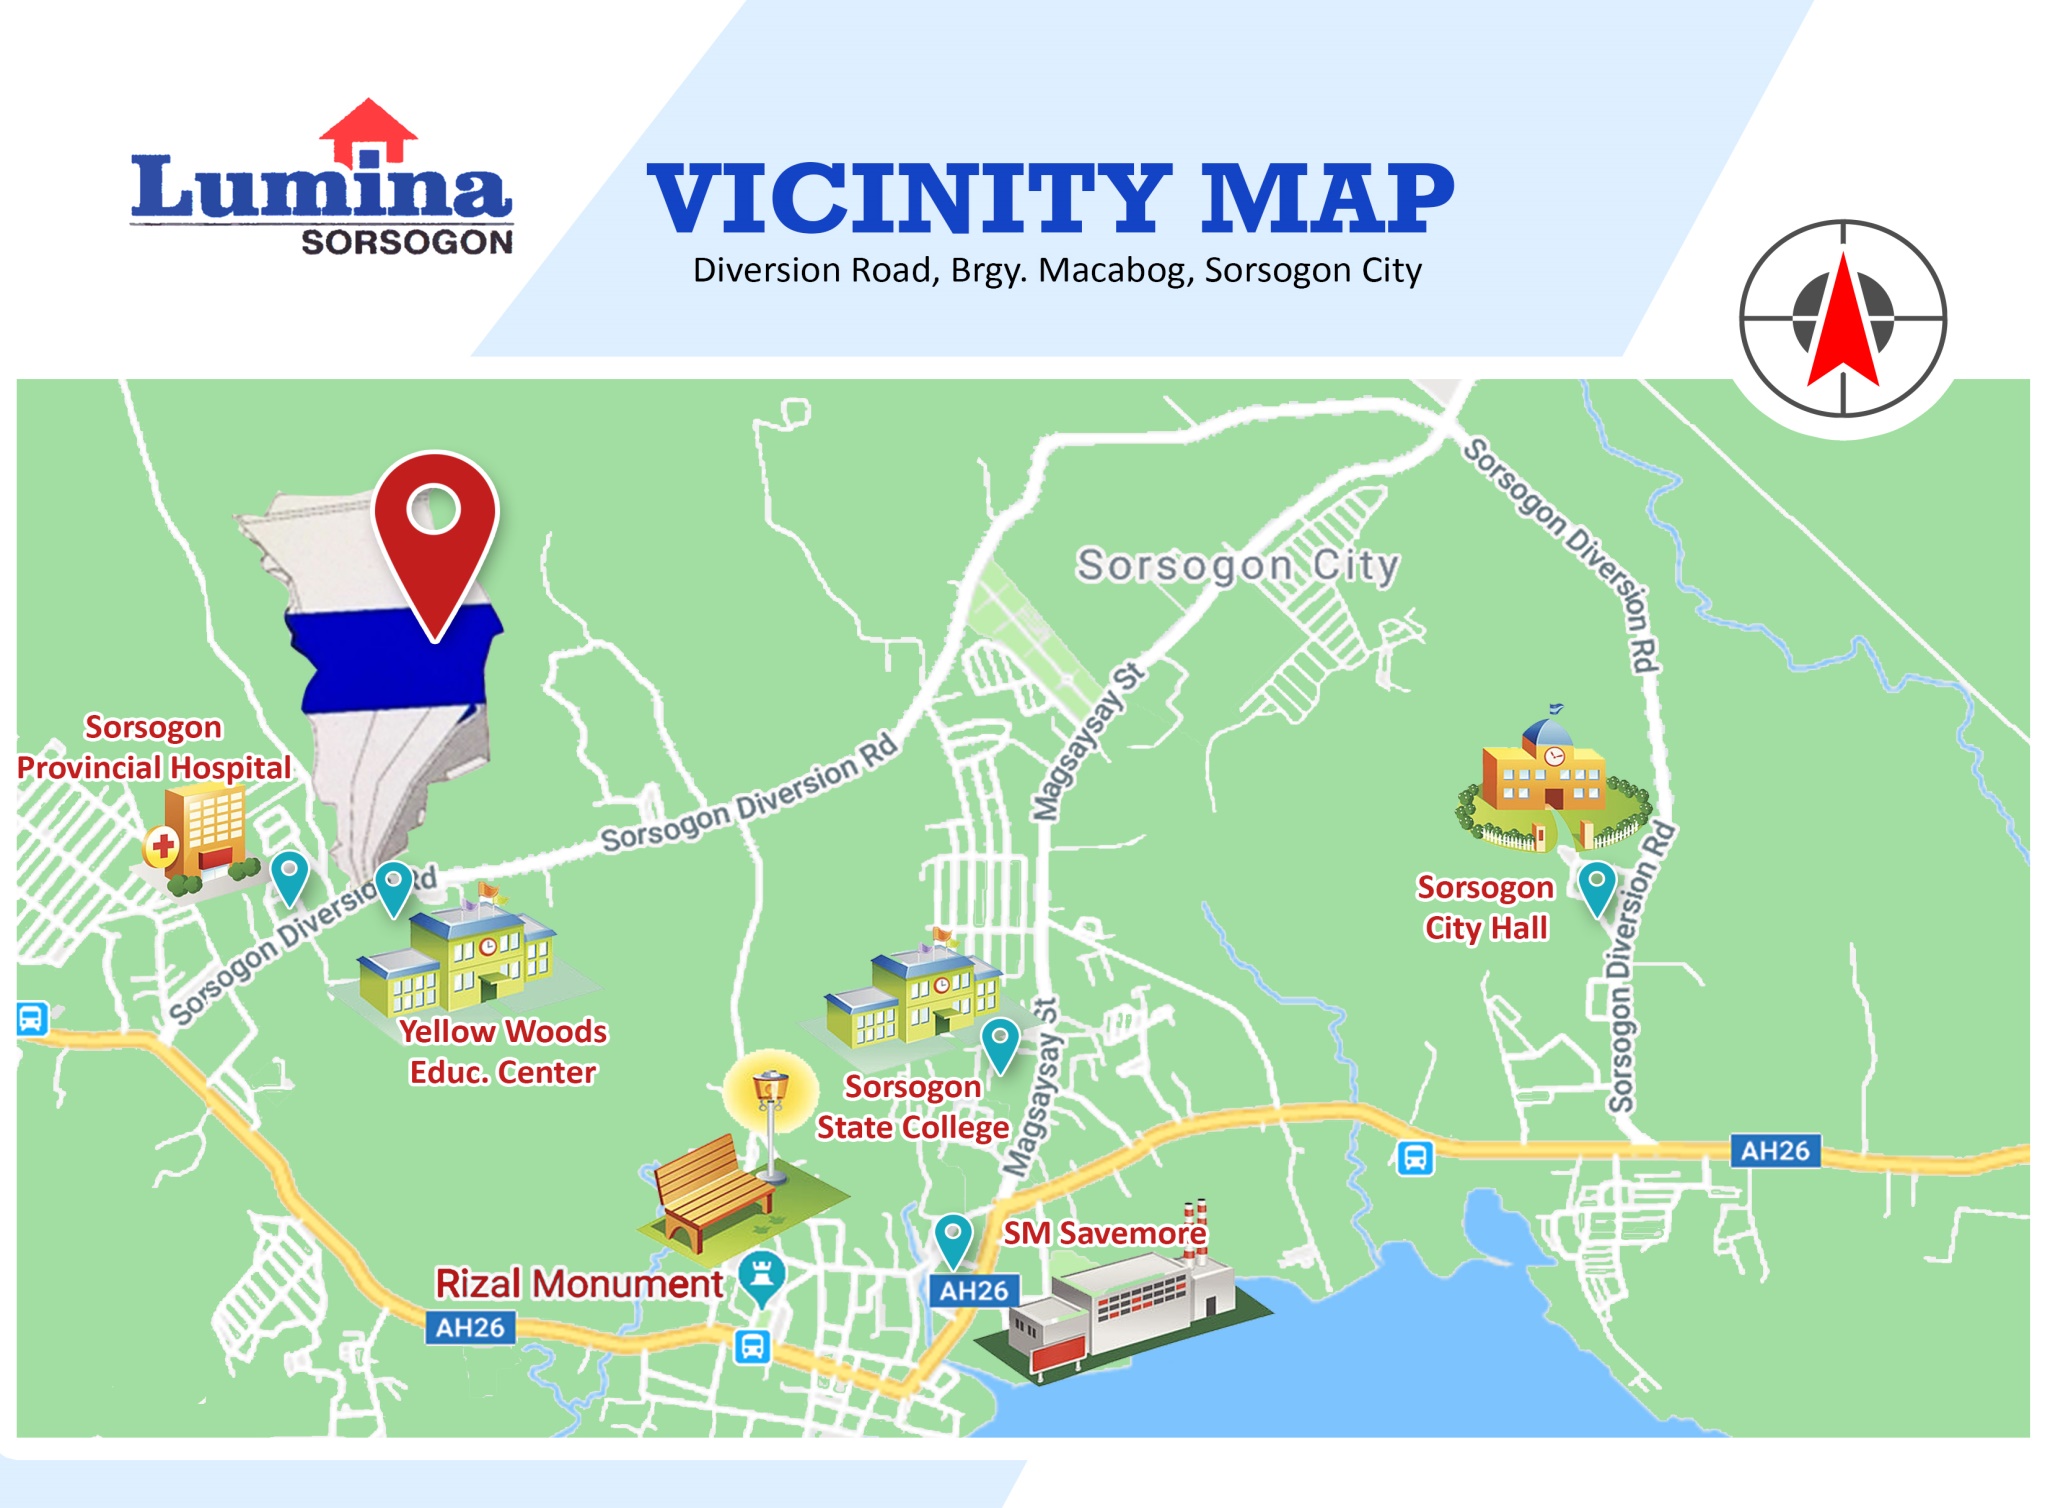 Vicinity-Map-1636440694.jpeg